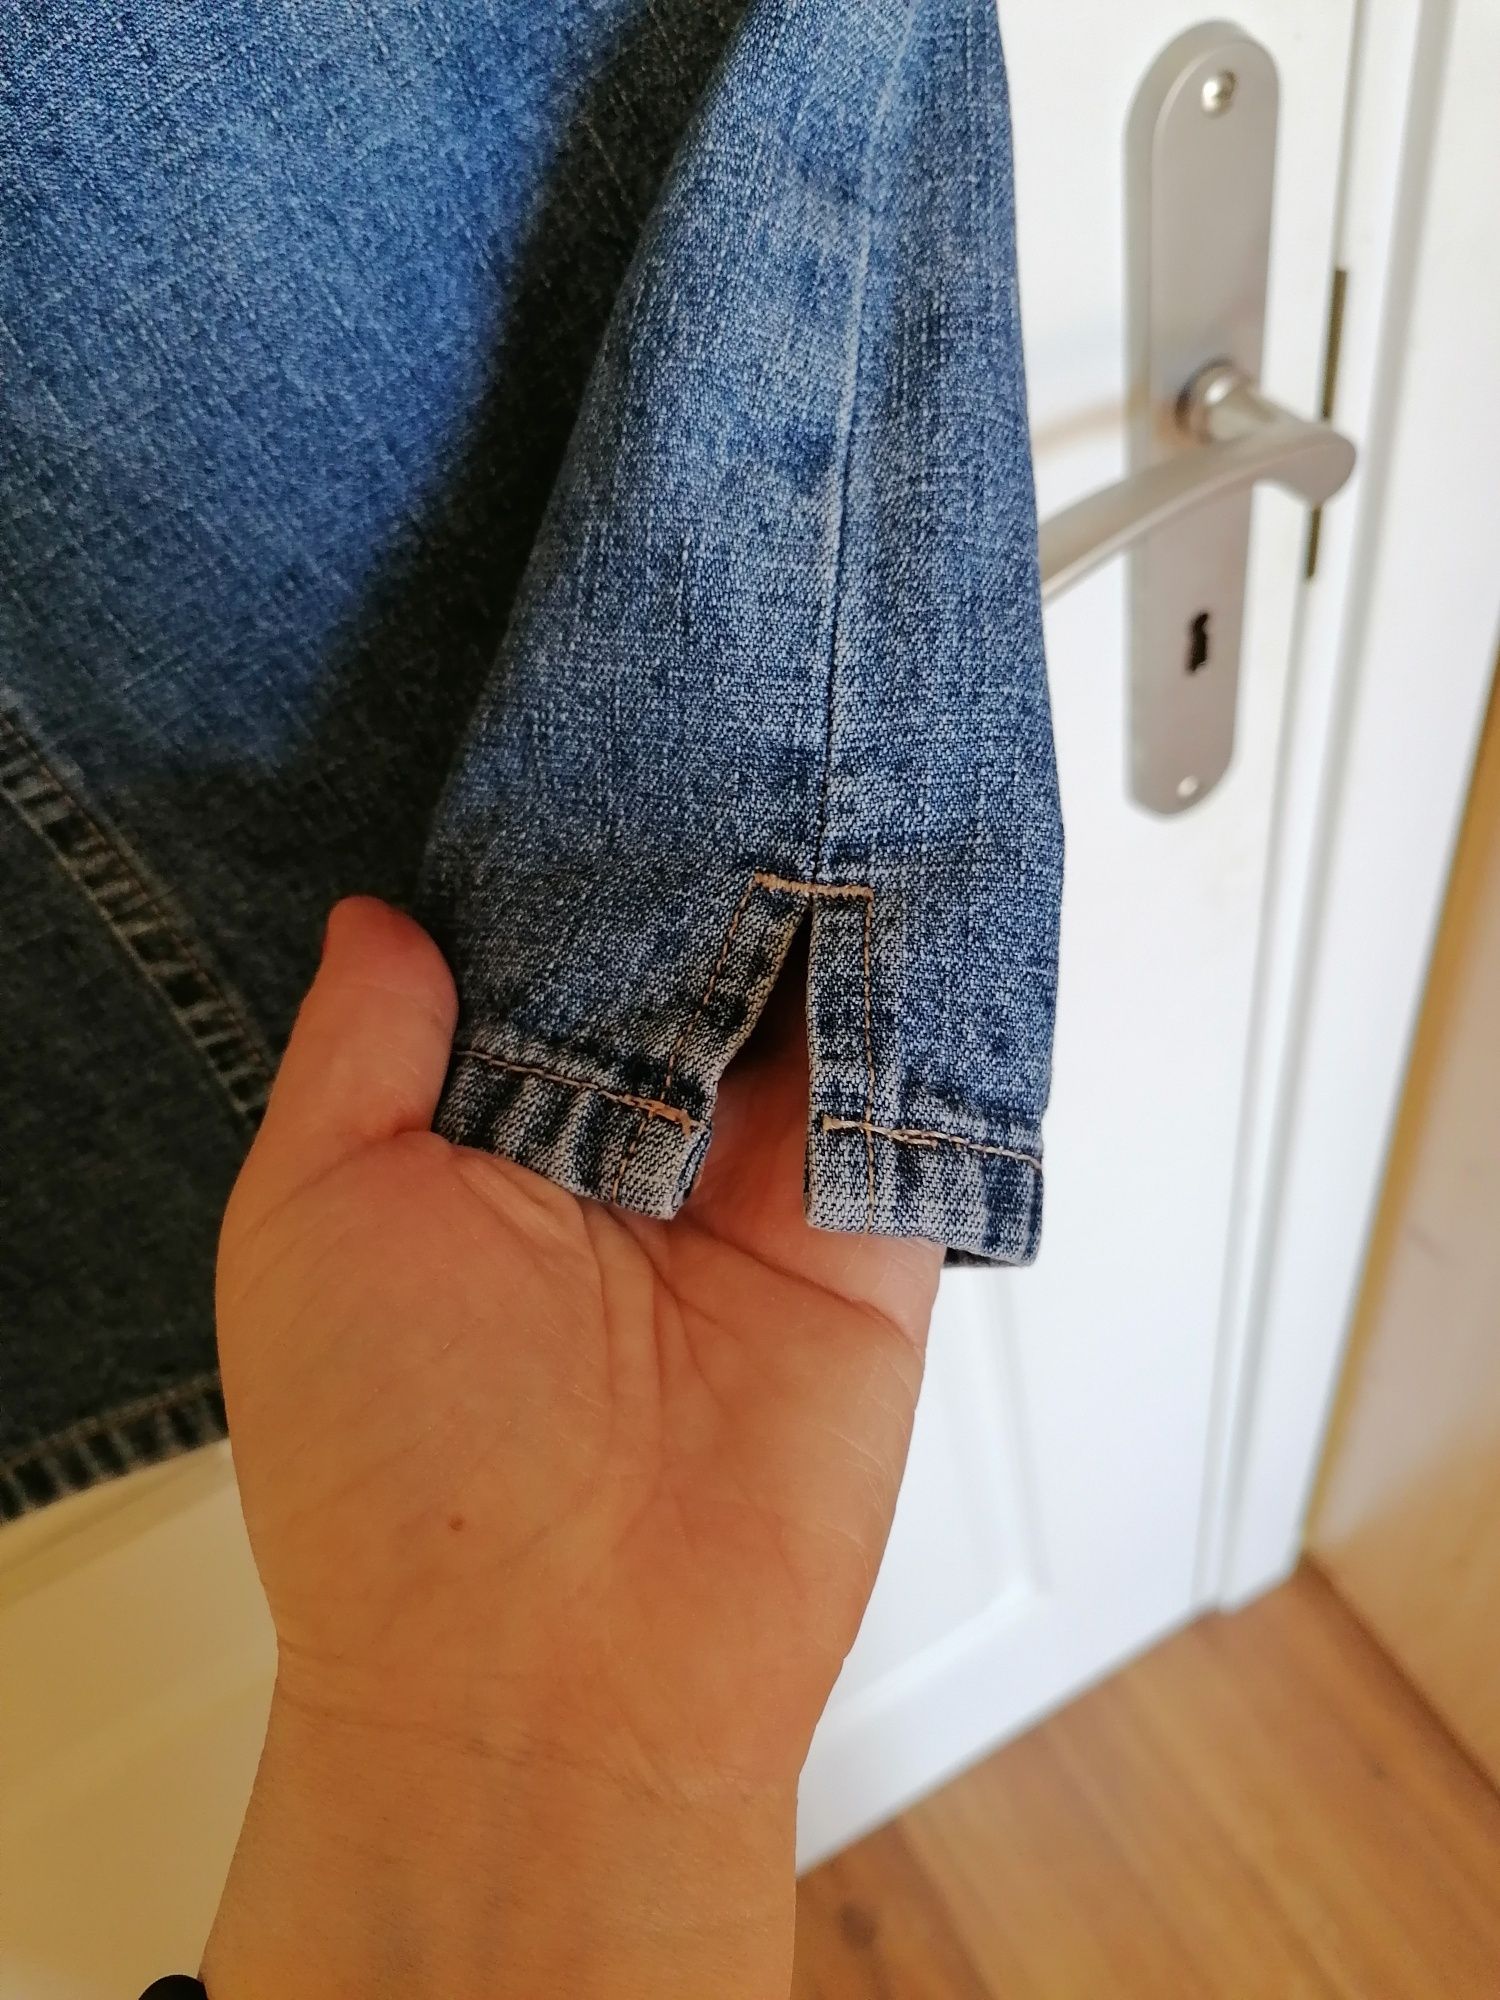 Spódnica jeansowa Designers, rozmiar 38/ S. Stan bardzo dobry. 
Z obu